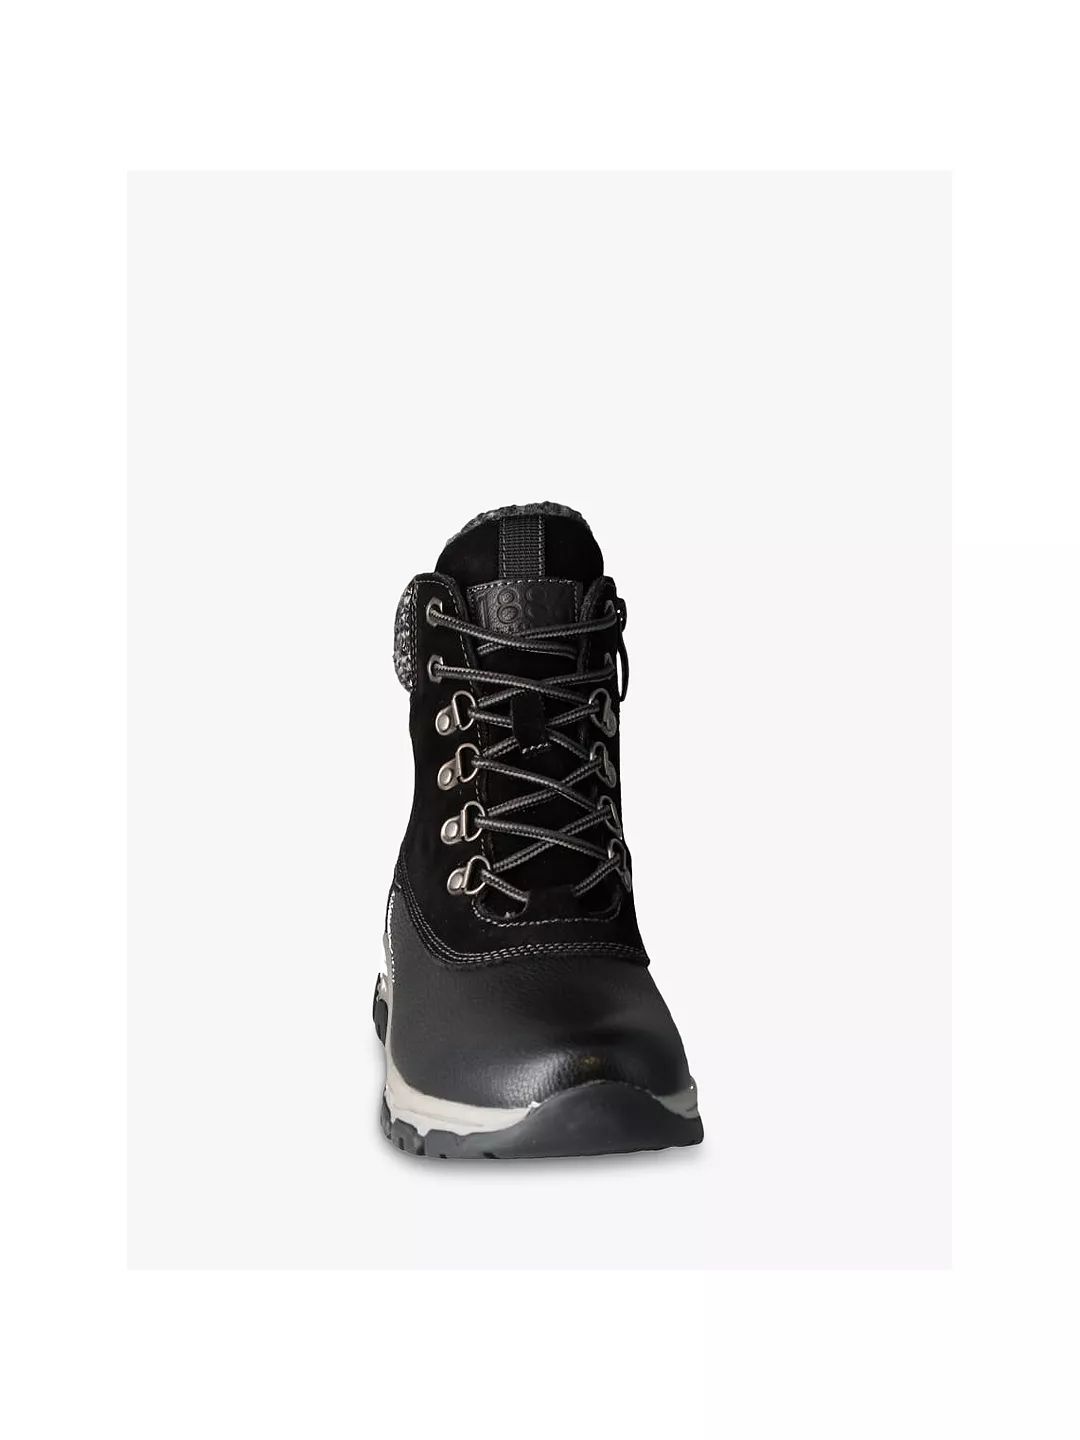 Josef Seibel Wynter 02 Leather Walking Boots, Black | John Lewis (UK)